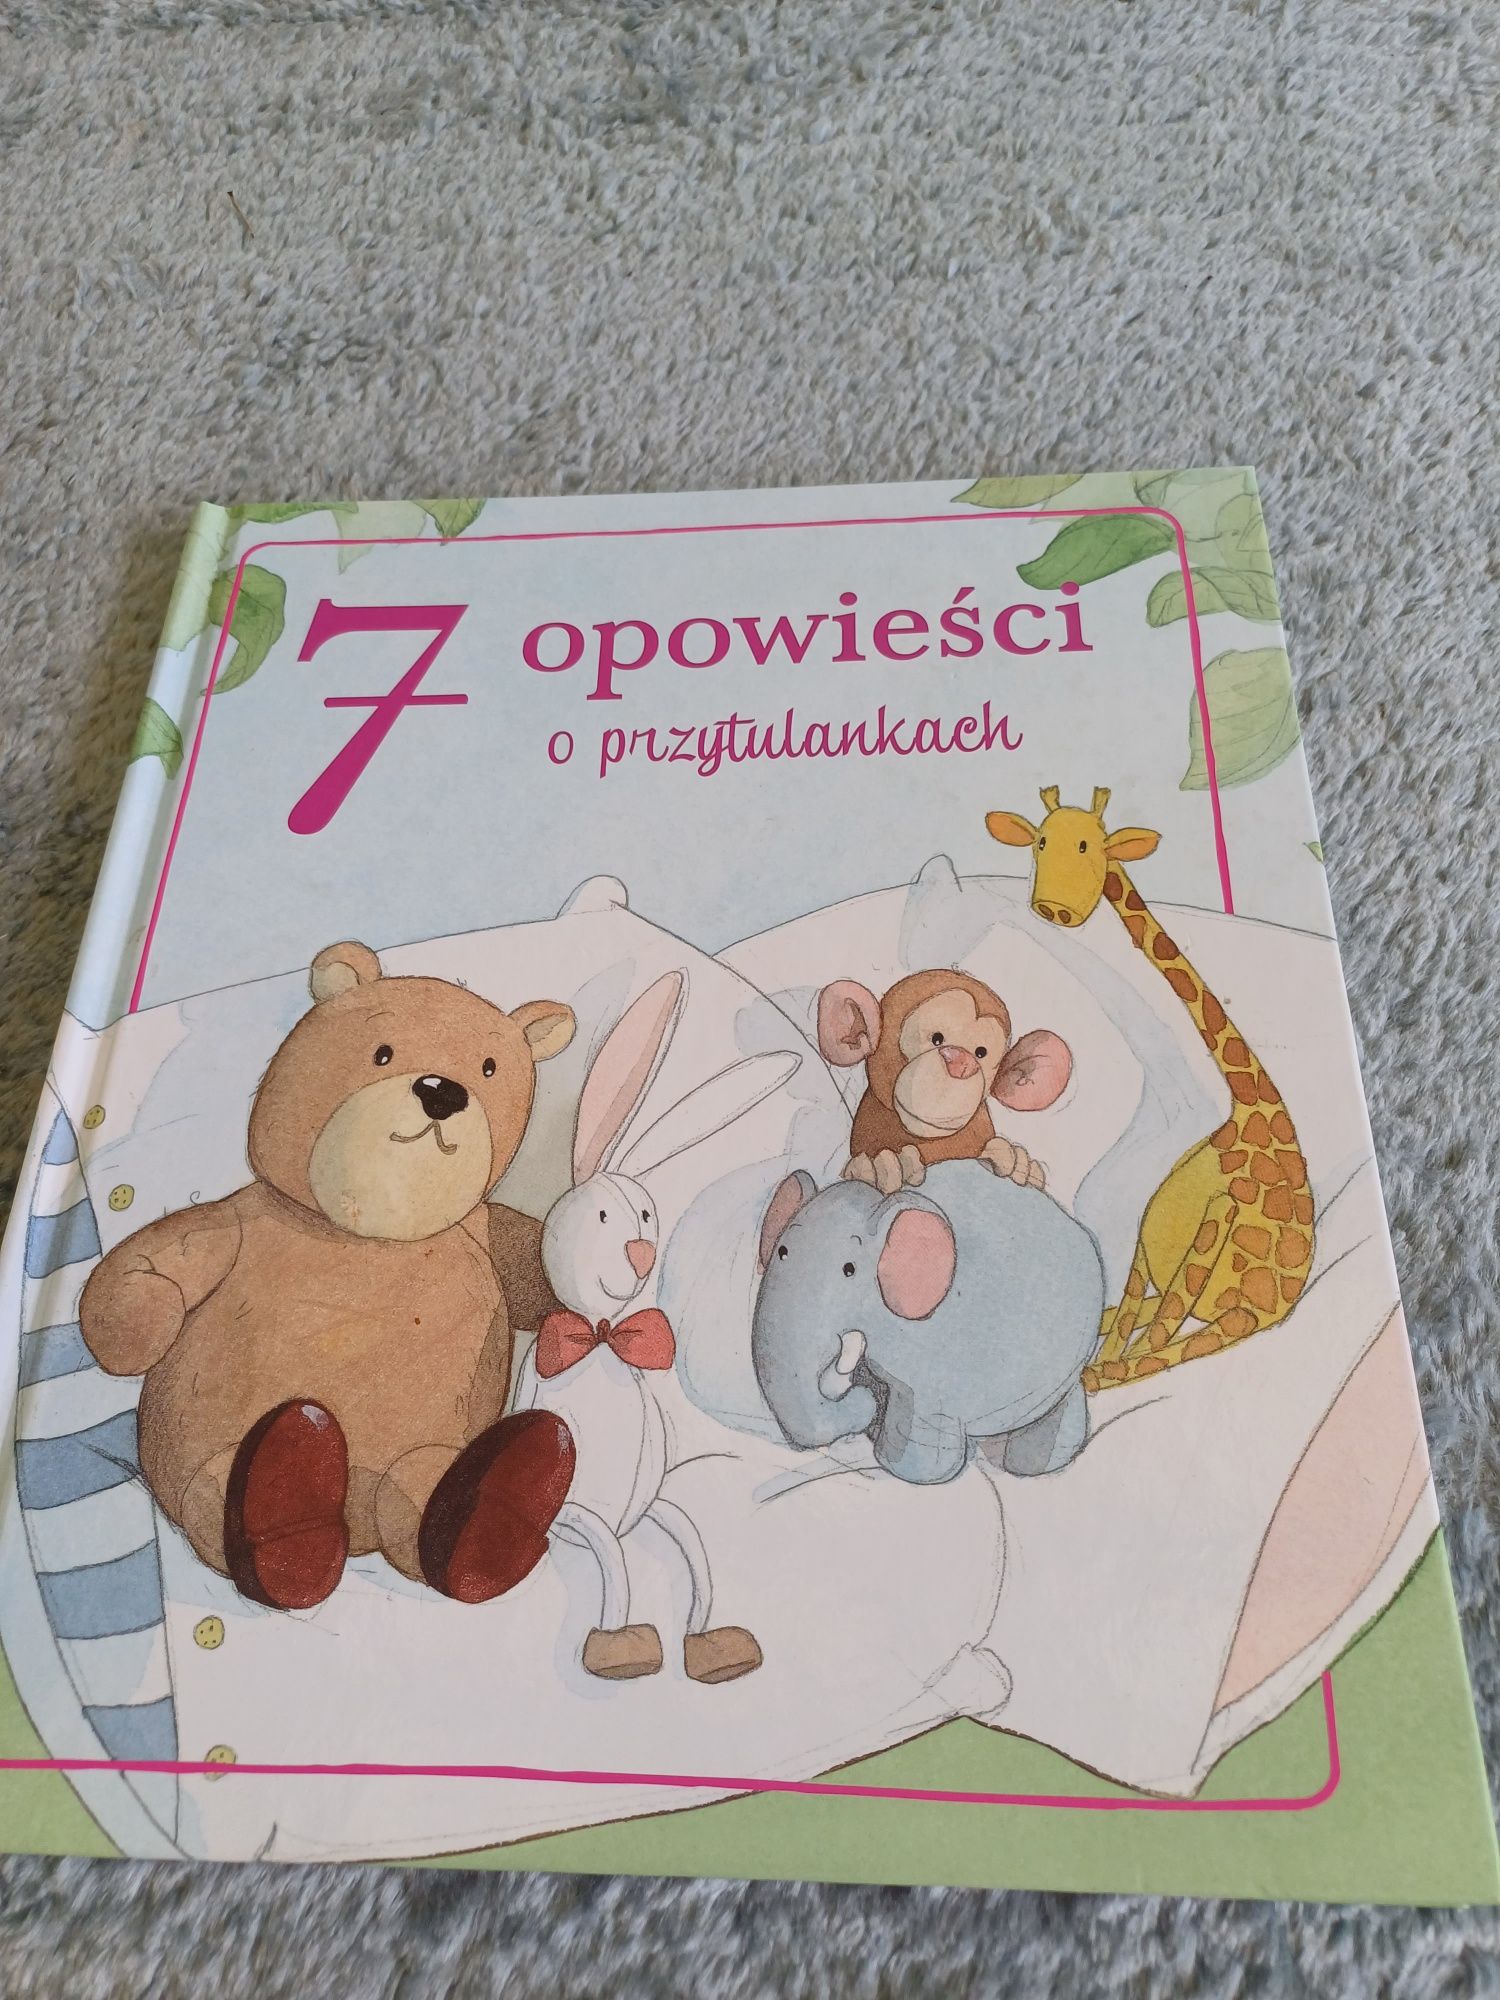 NOWE 7 opowieści o przytulankach Nowa książka